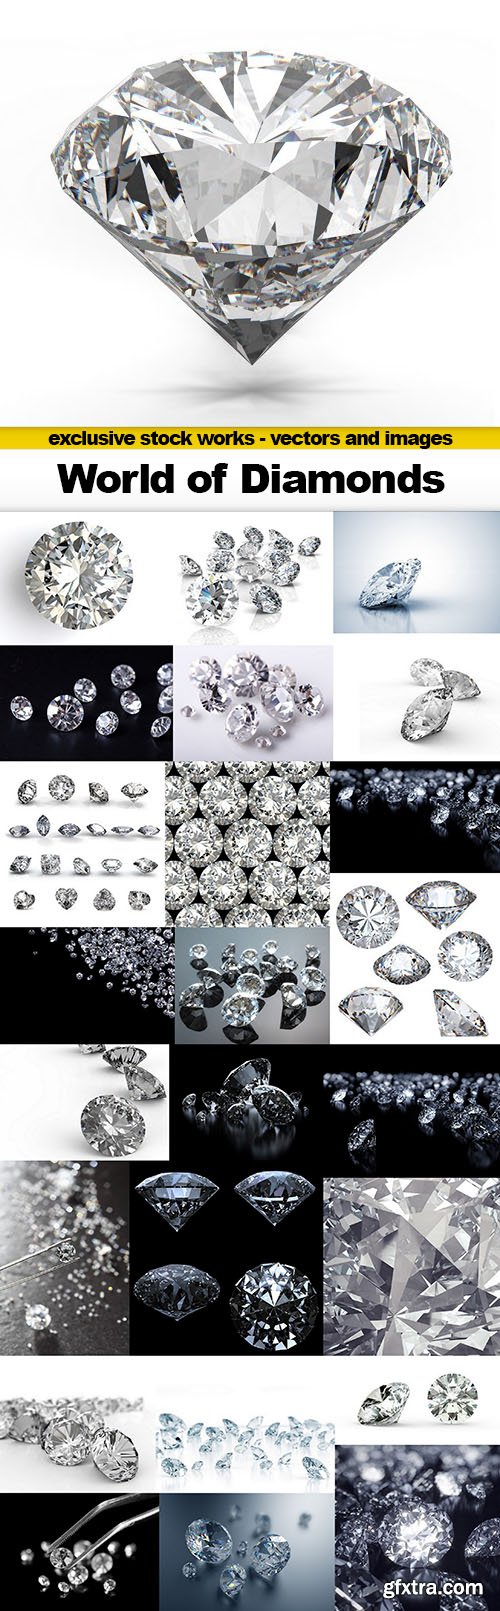 World of Diamonds - 25x UHQ JPEG